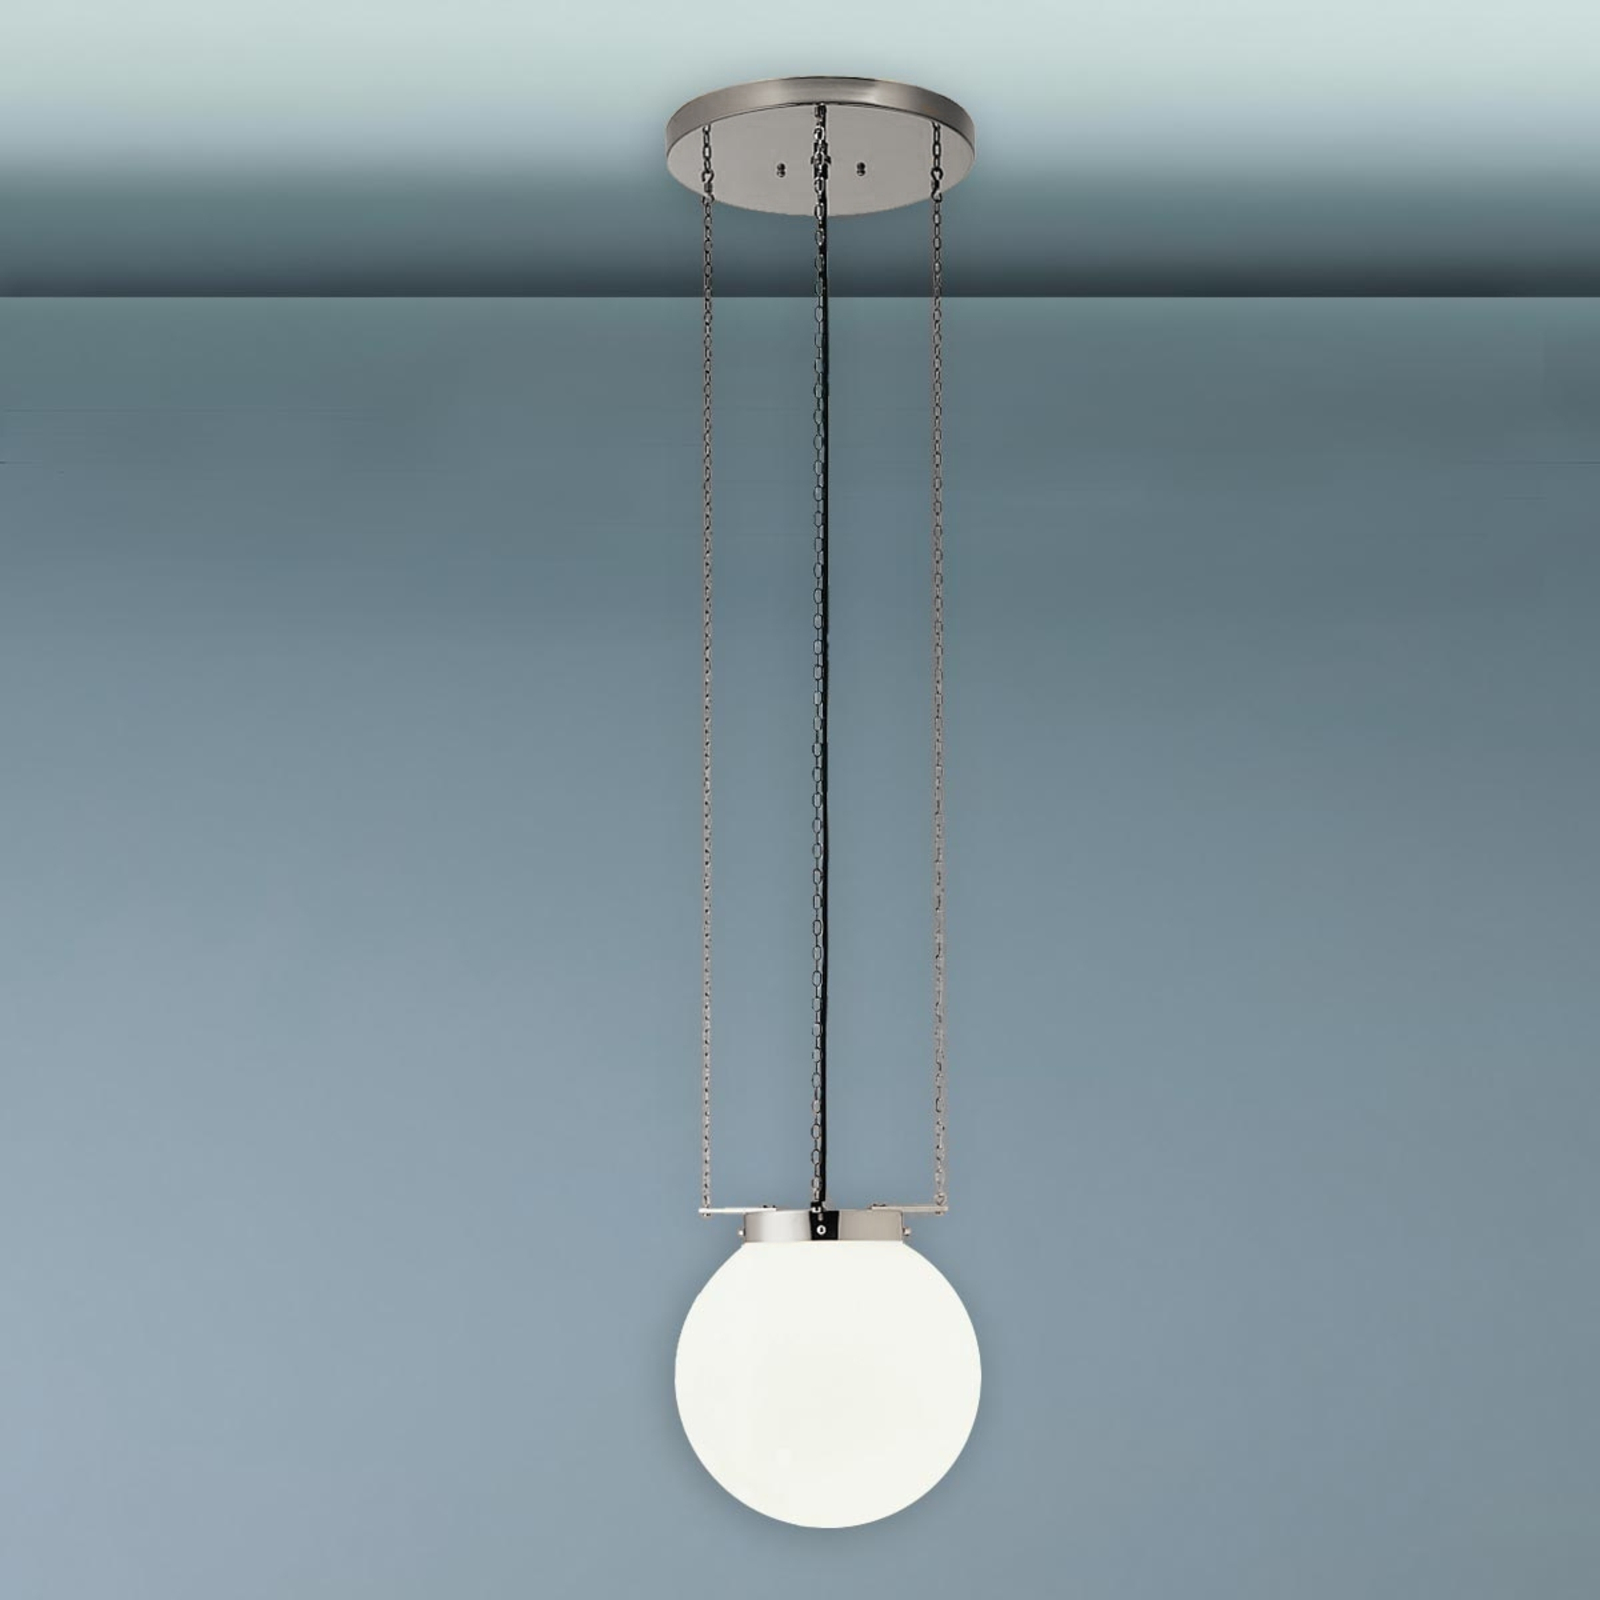 Hanglamp in Bauhaus-stijl, nikkel, 40 cm